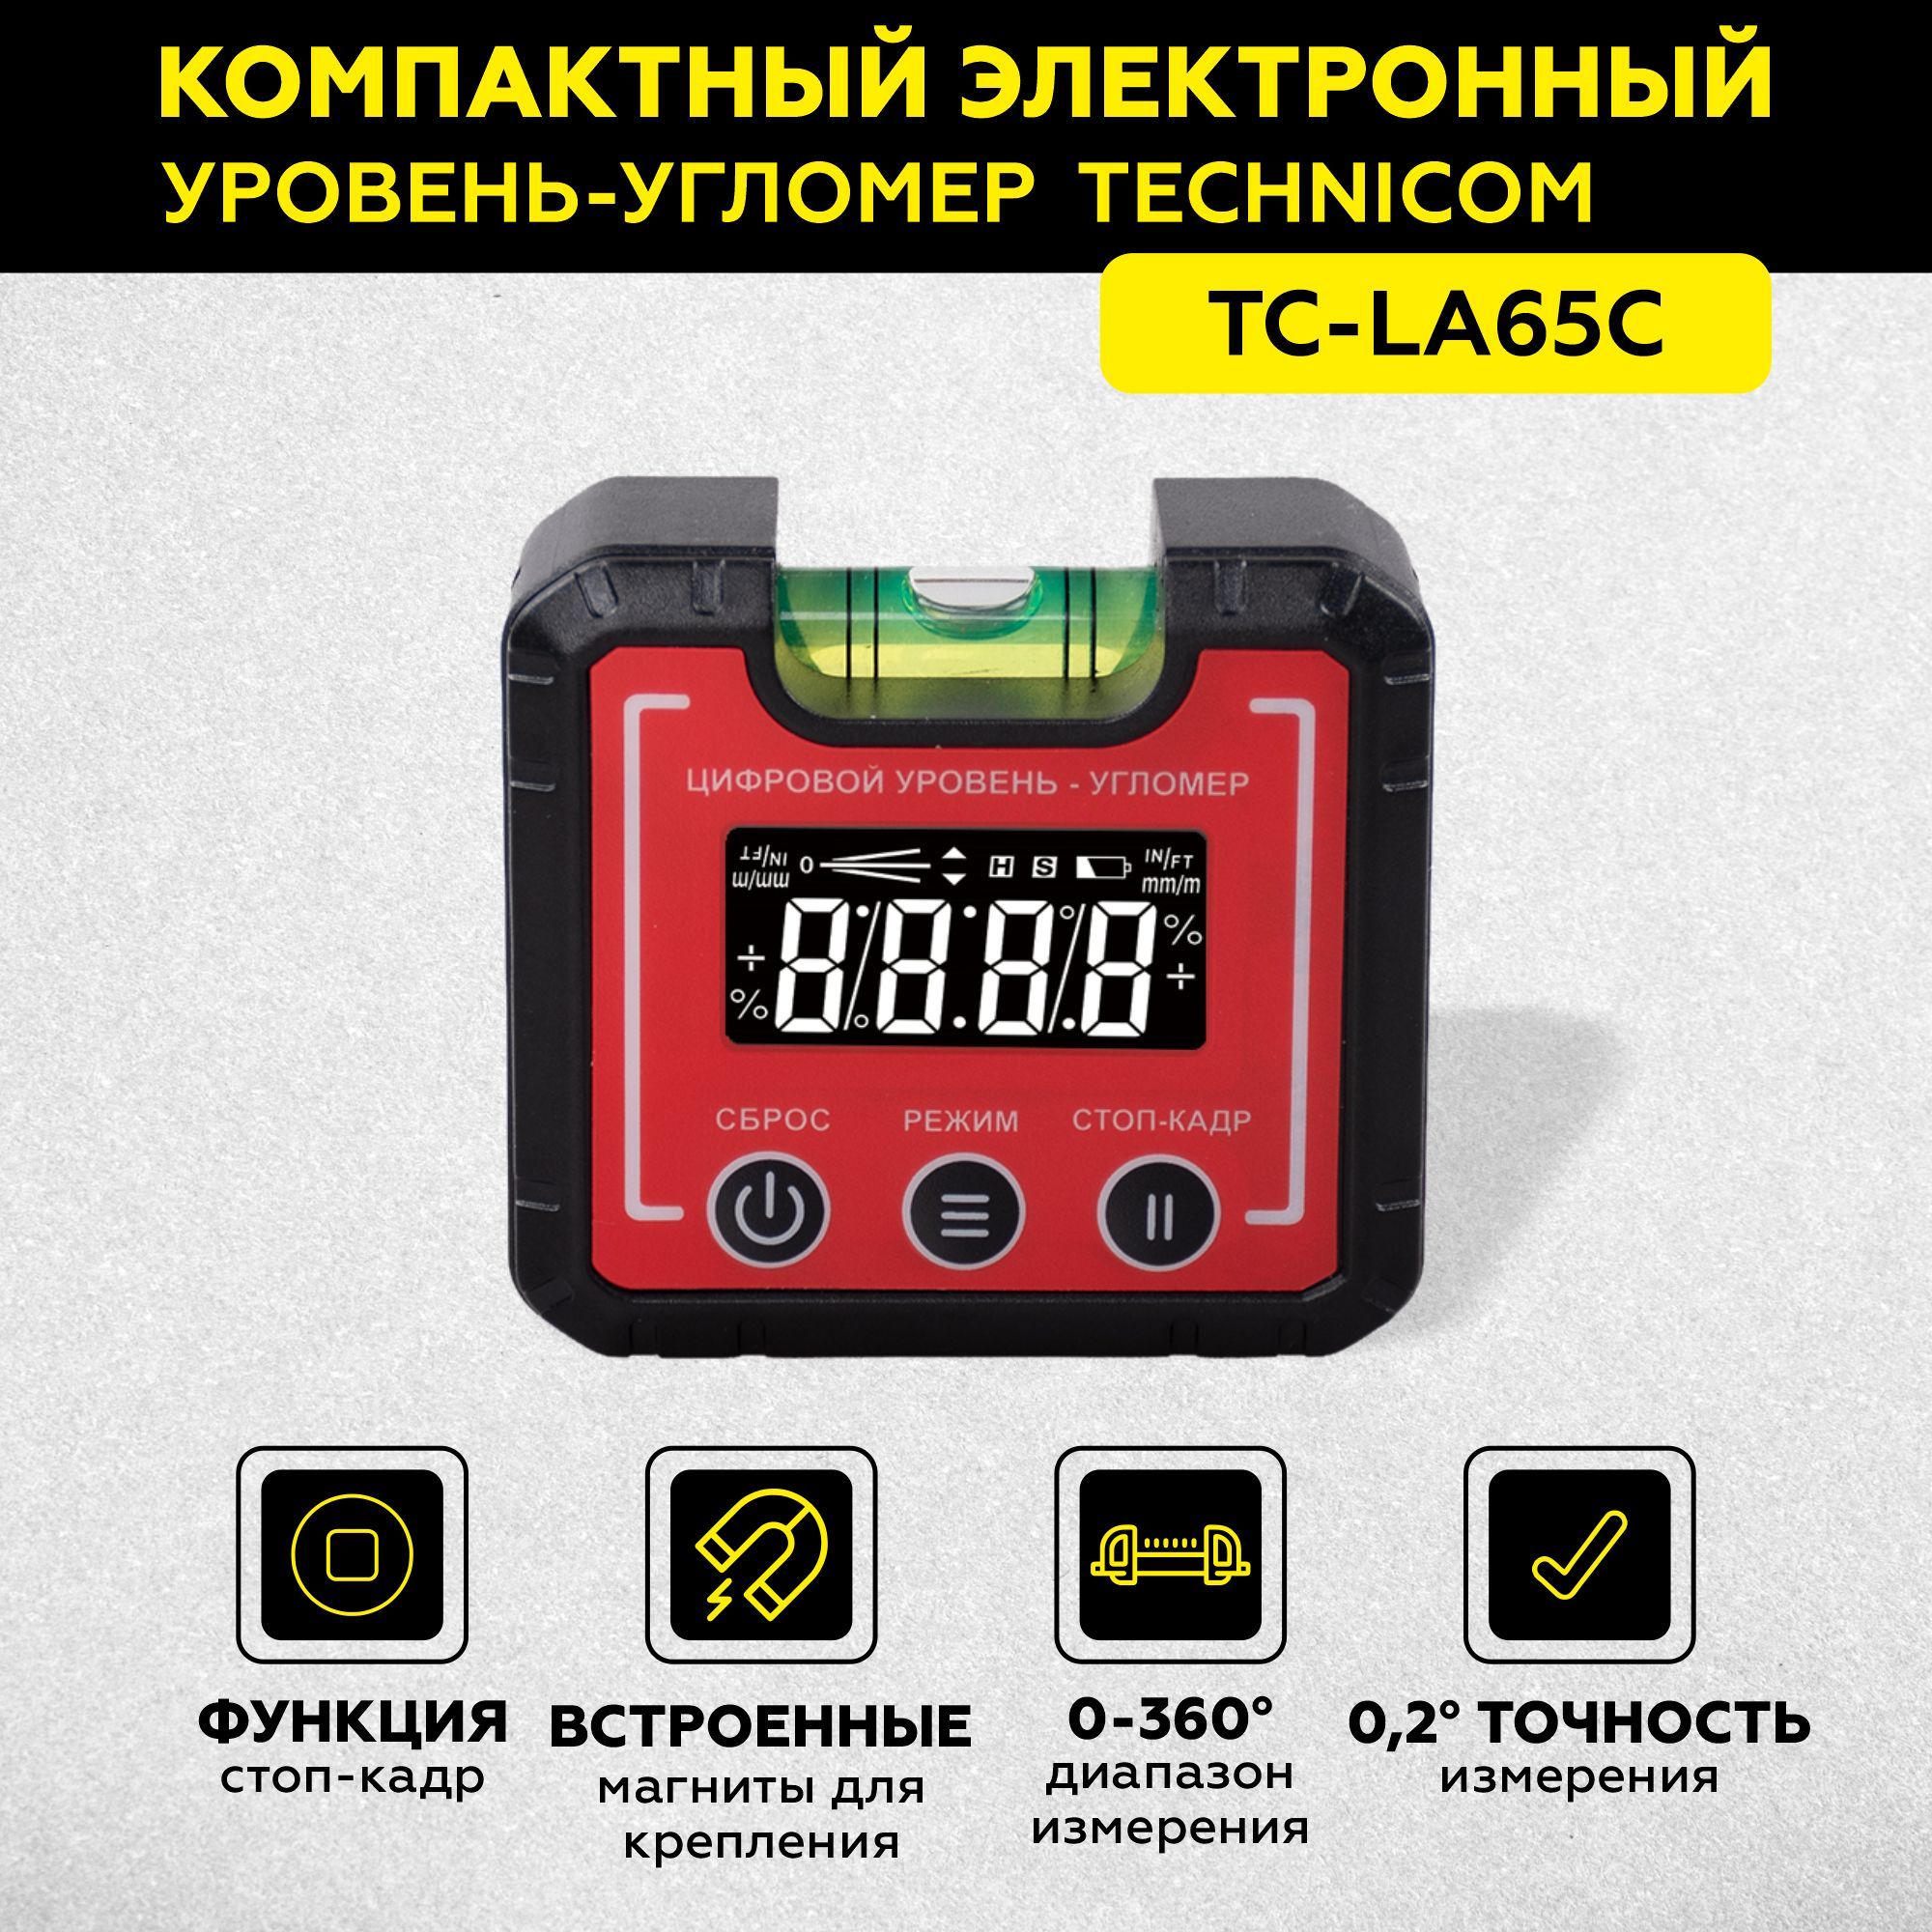 Электронный уровень-угломер с магнитом TECHNICOM 65 мм TC-LA65C электронный измеритель влажности древесины technicom